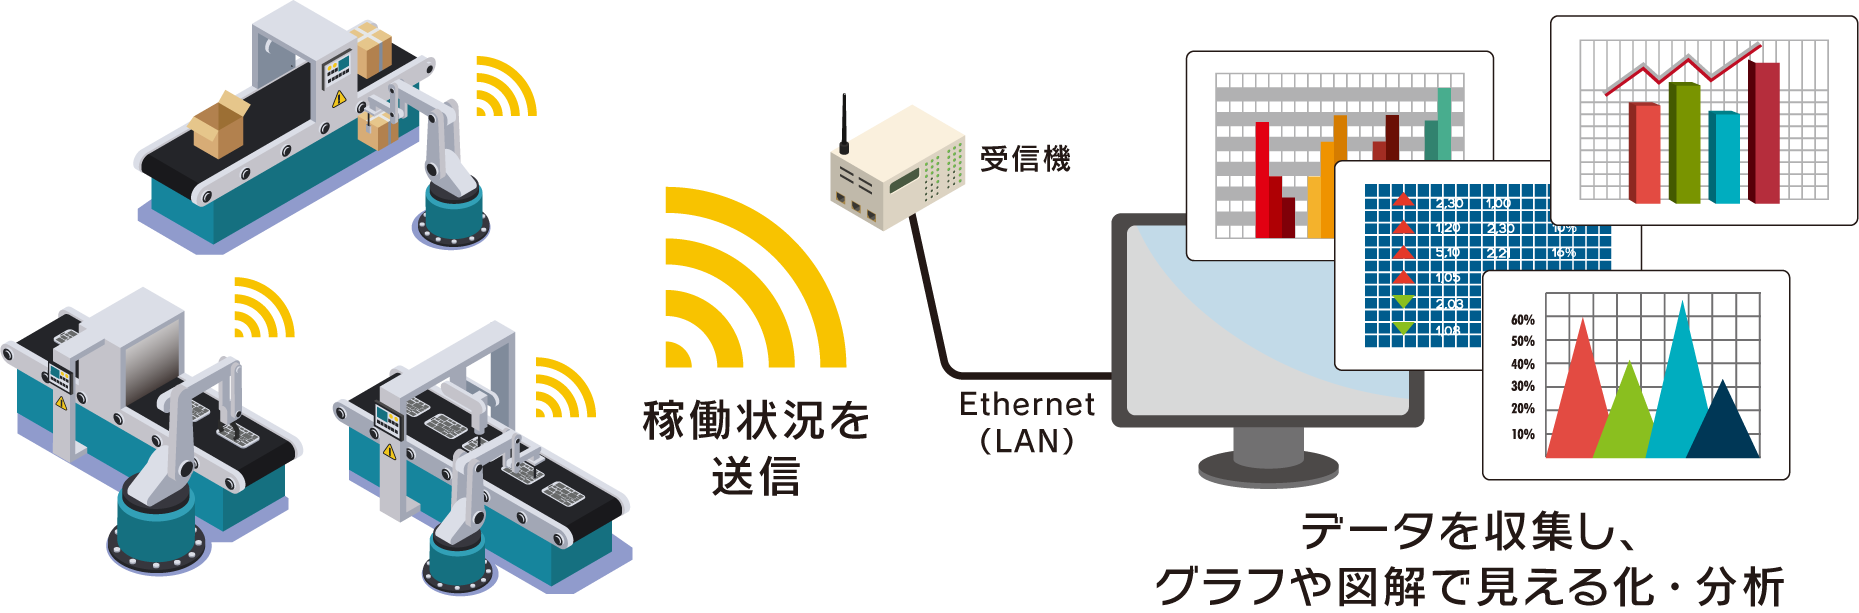 稼働状況を送信 受信機 Ethernet（LAN） データを収集し、グラフや図解で見える化・分析